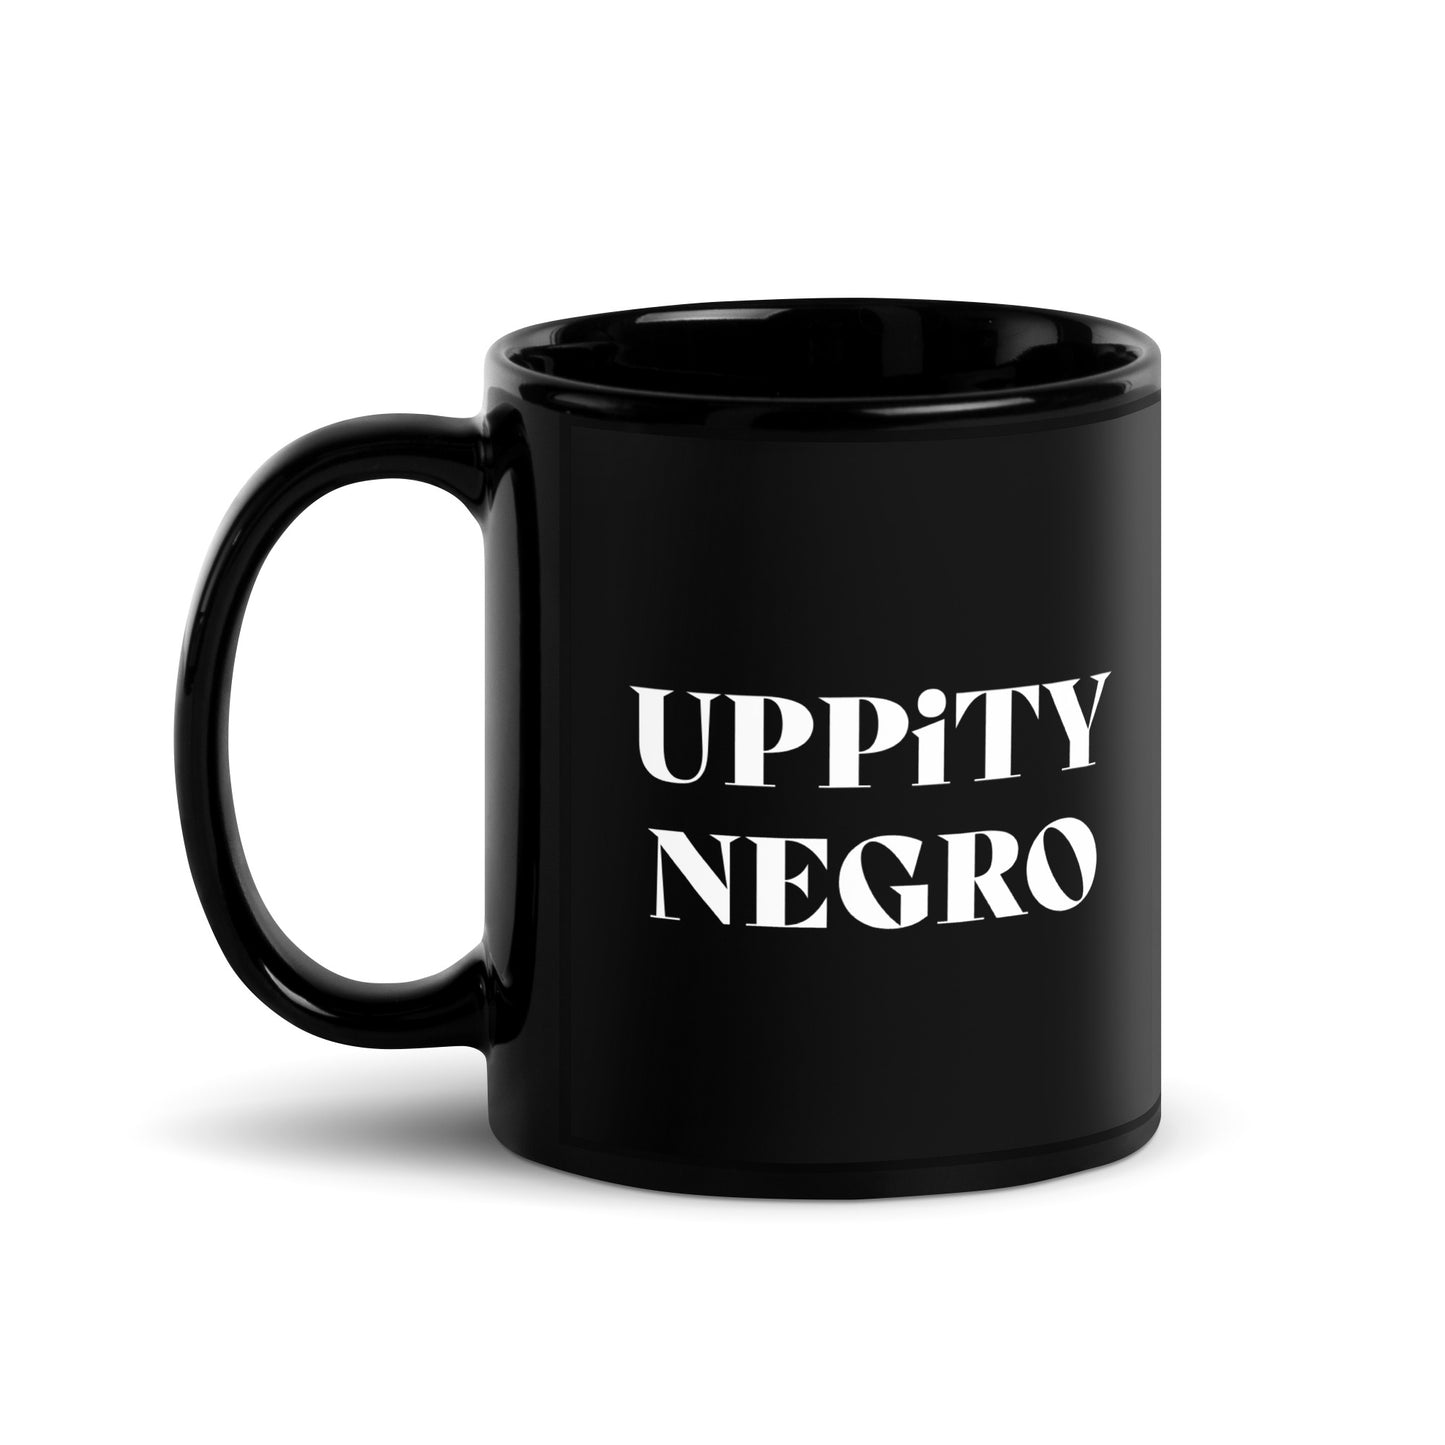 Uppity Negro- Black Glossy Mug